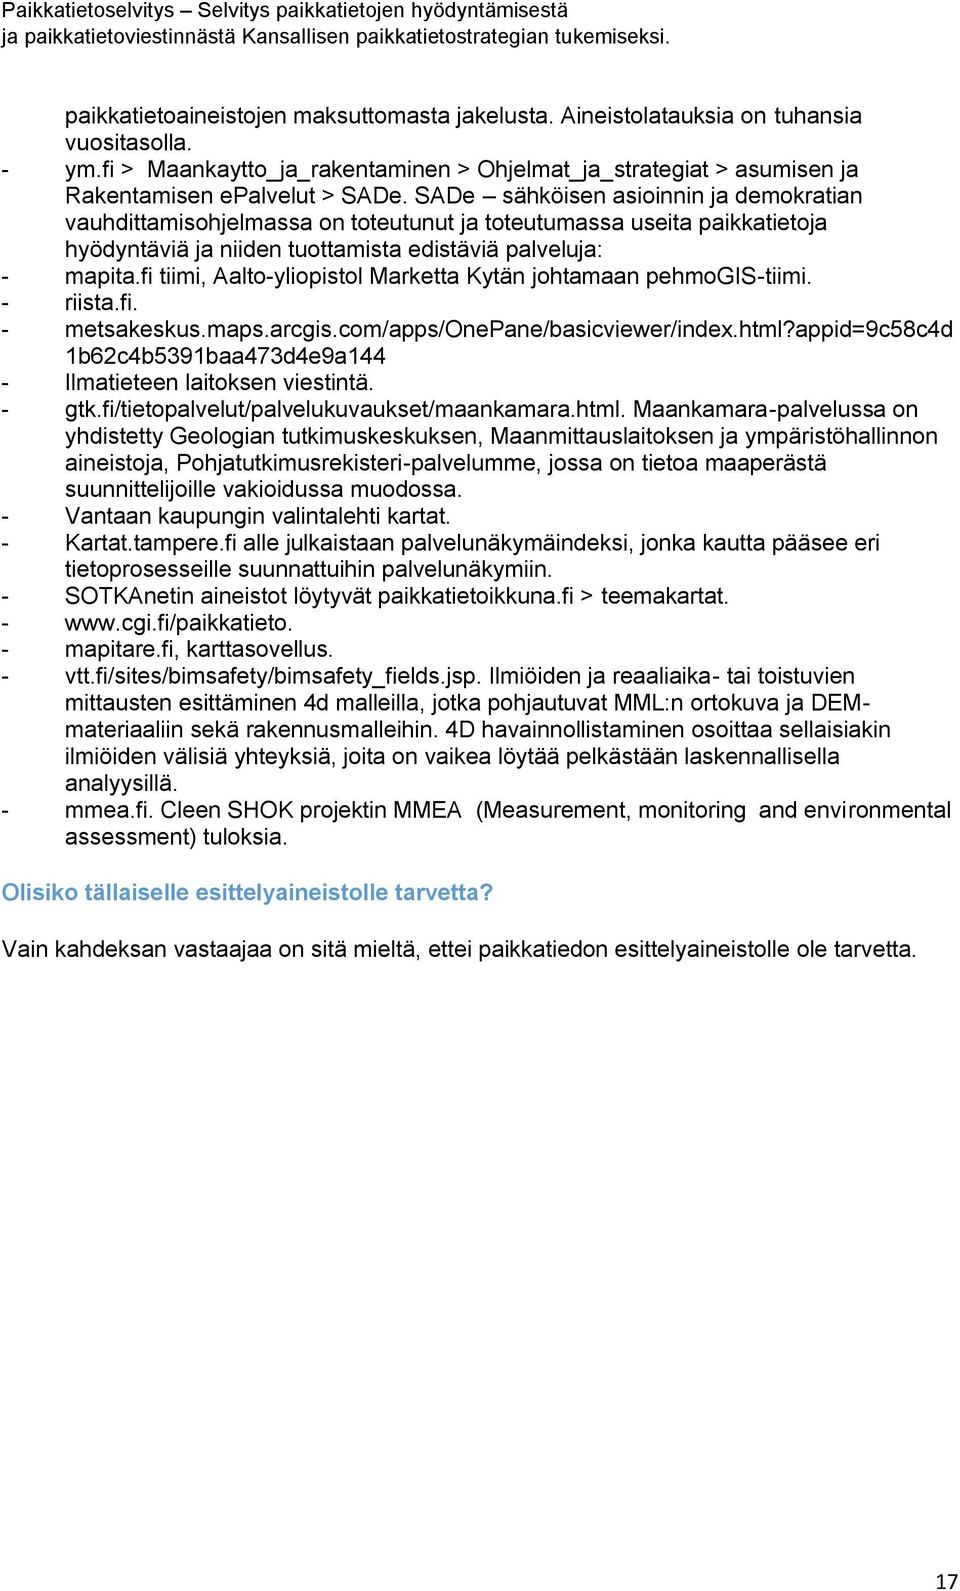 fi tiimi, Aalto-yliopistol Marketta Kytän johtamaan pehmogis-tiimi. - riista.fi. - metsakeskus.maps.arcgis.com/apps/onepane/basicviewer/index.html?